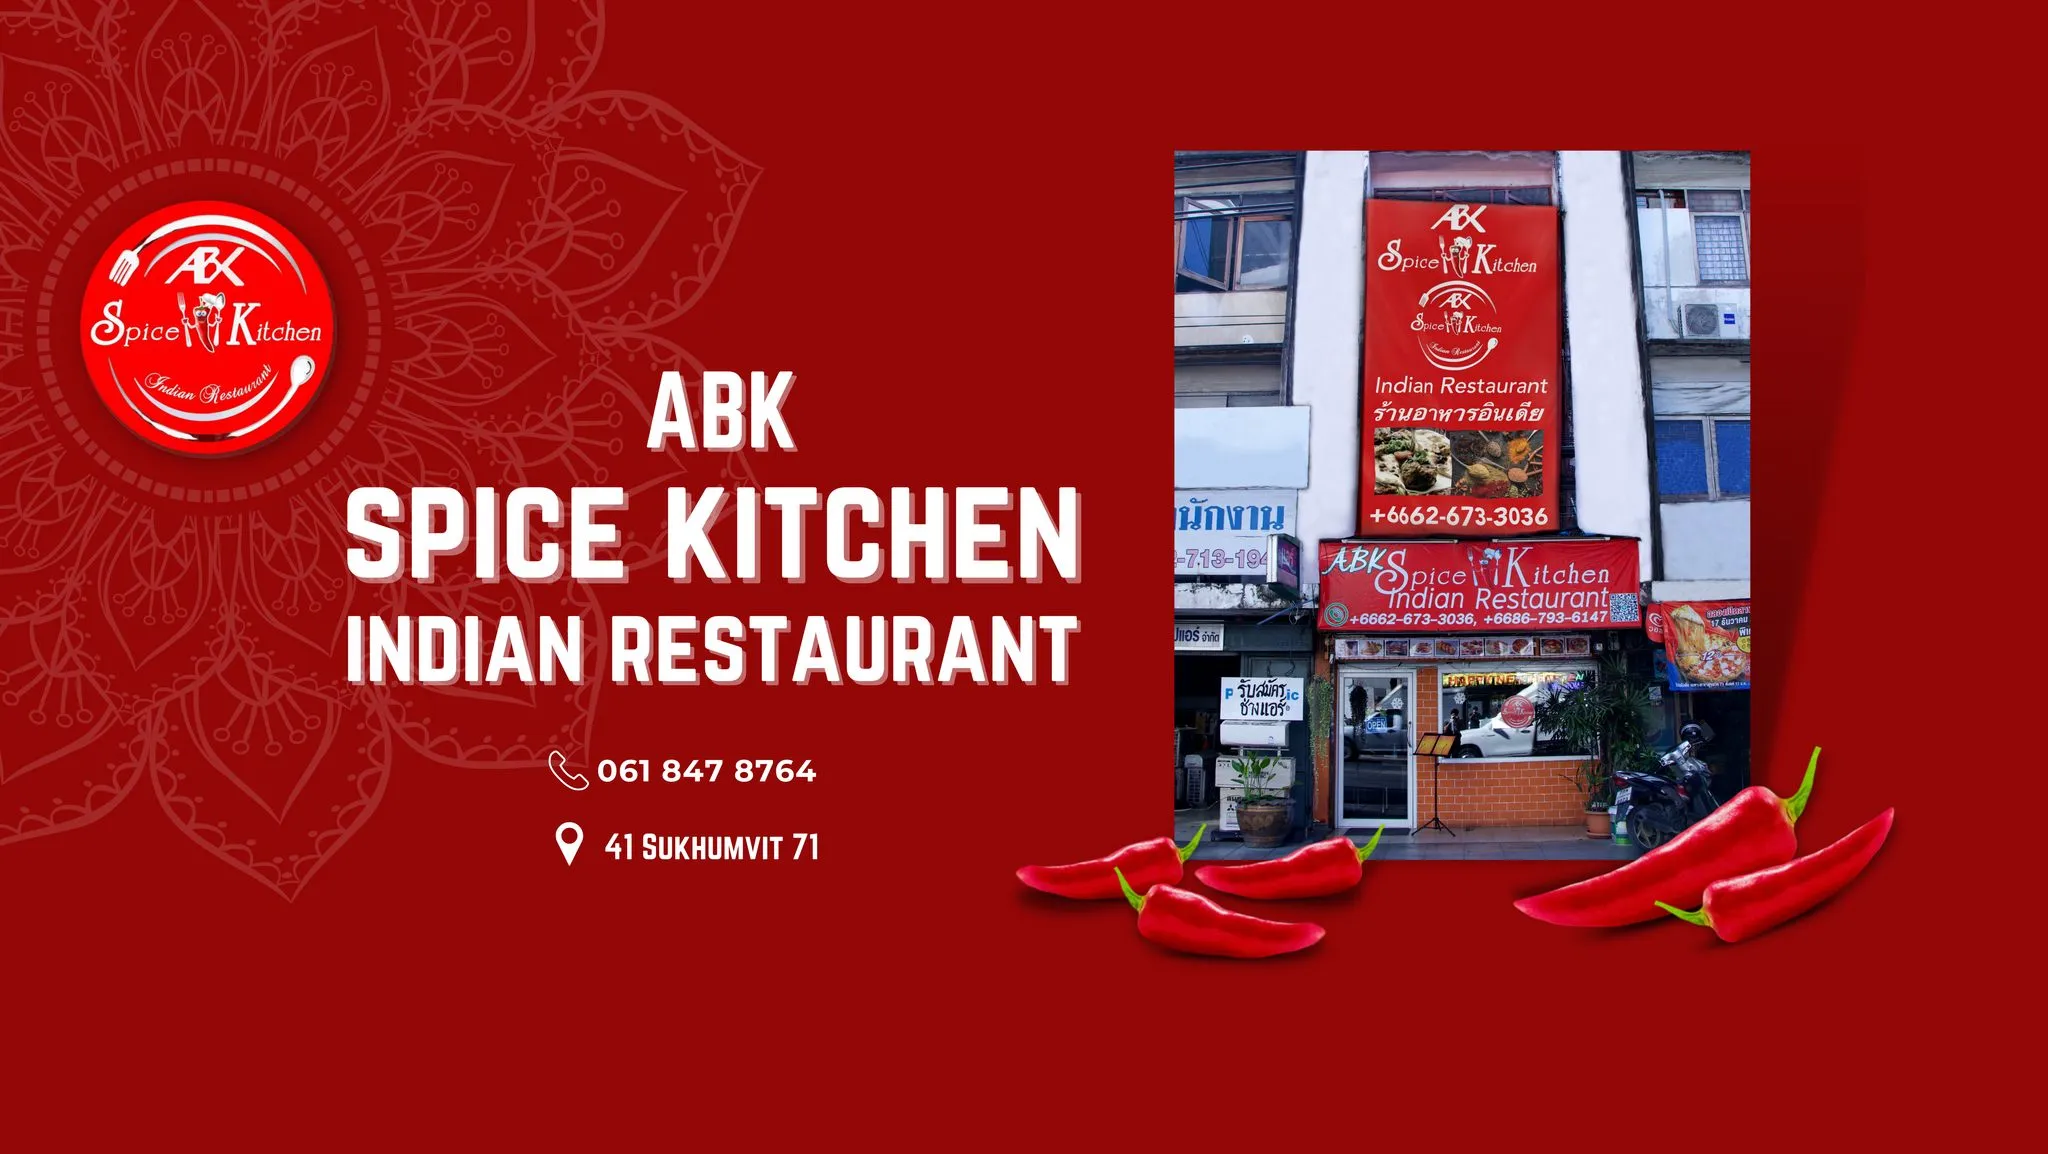 ABK Spice kitchen Indian restaurant 001